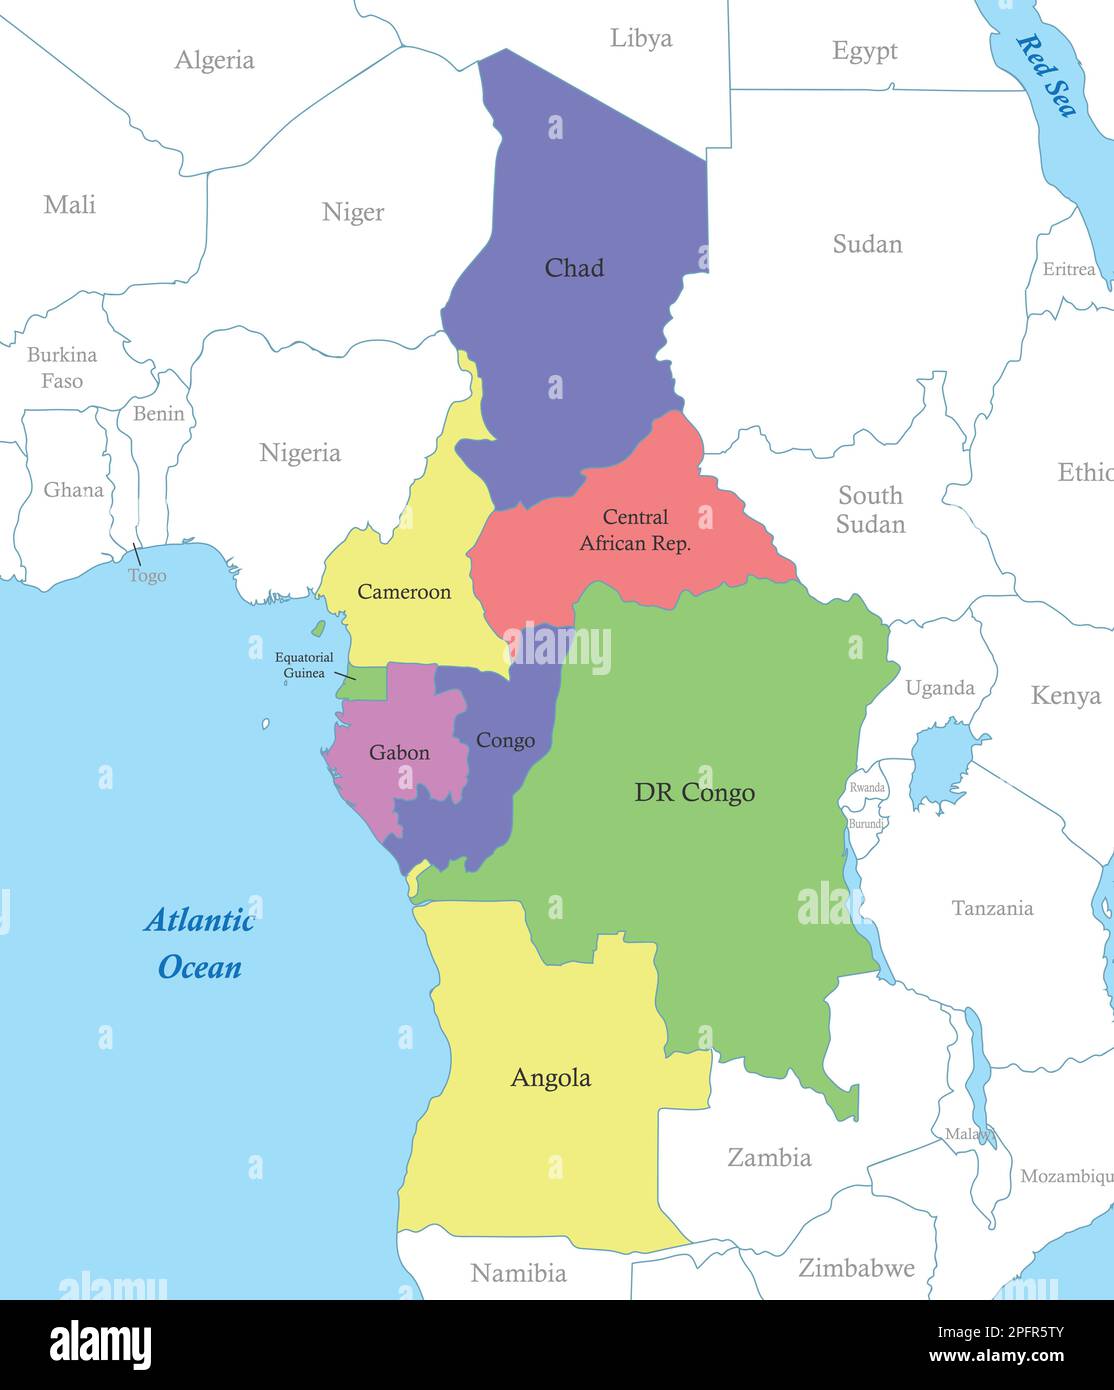 Mappa a colori politica dell'Africa centrale con i confini degli stati. Illustrazione Vettoriale